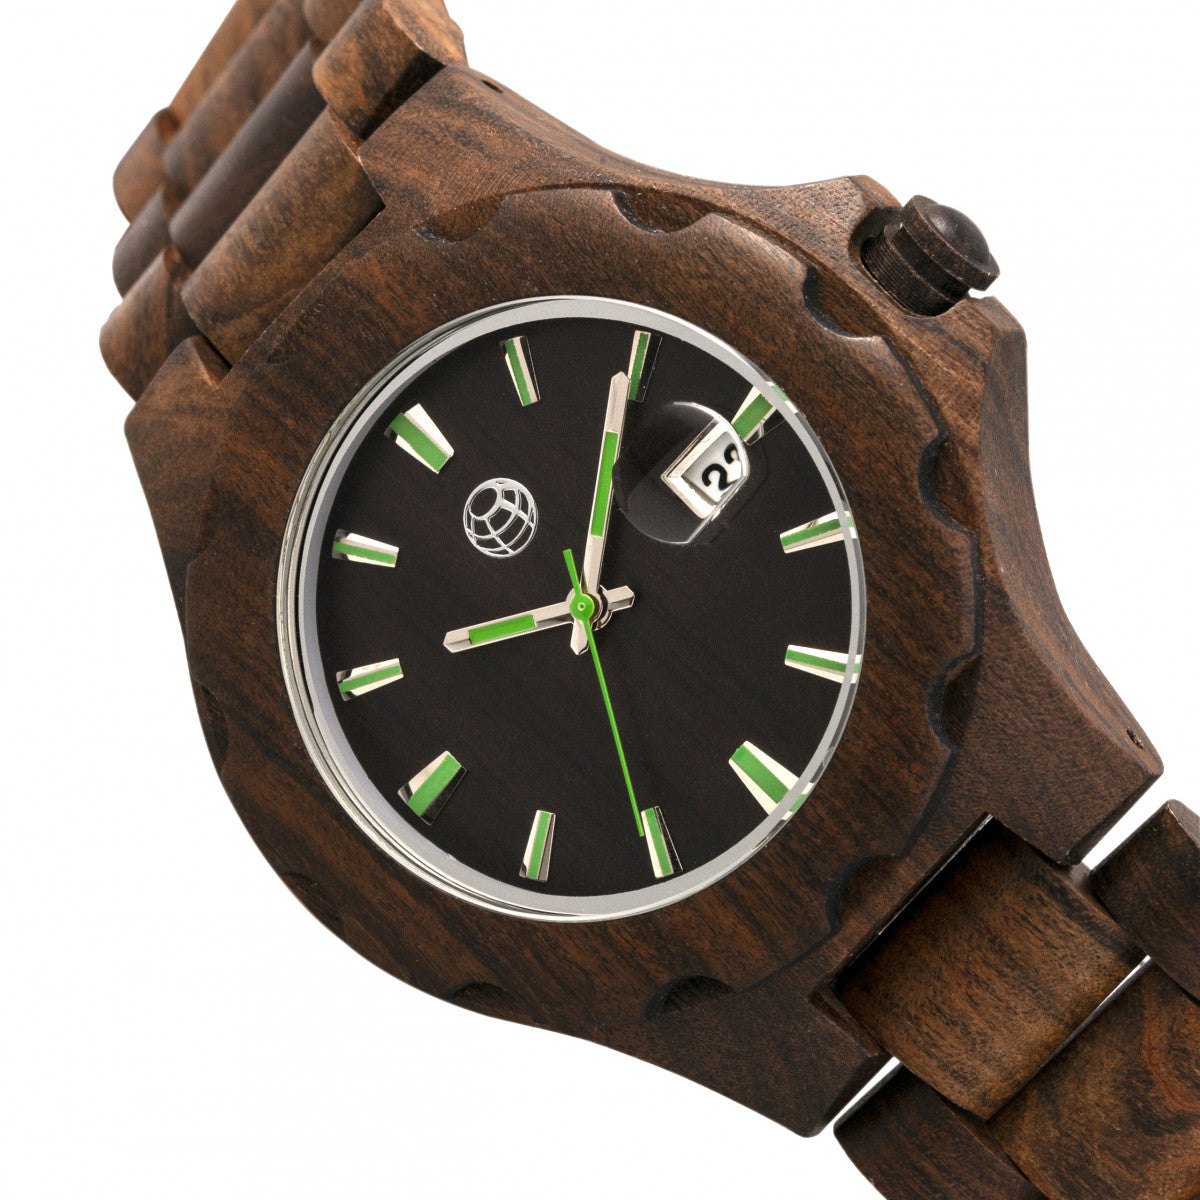 Earth Wood Gila Bracelet Watch w/Magnified Date - Dark Brown - ETHEW3302